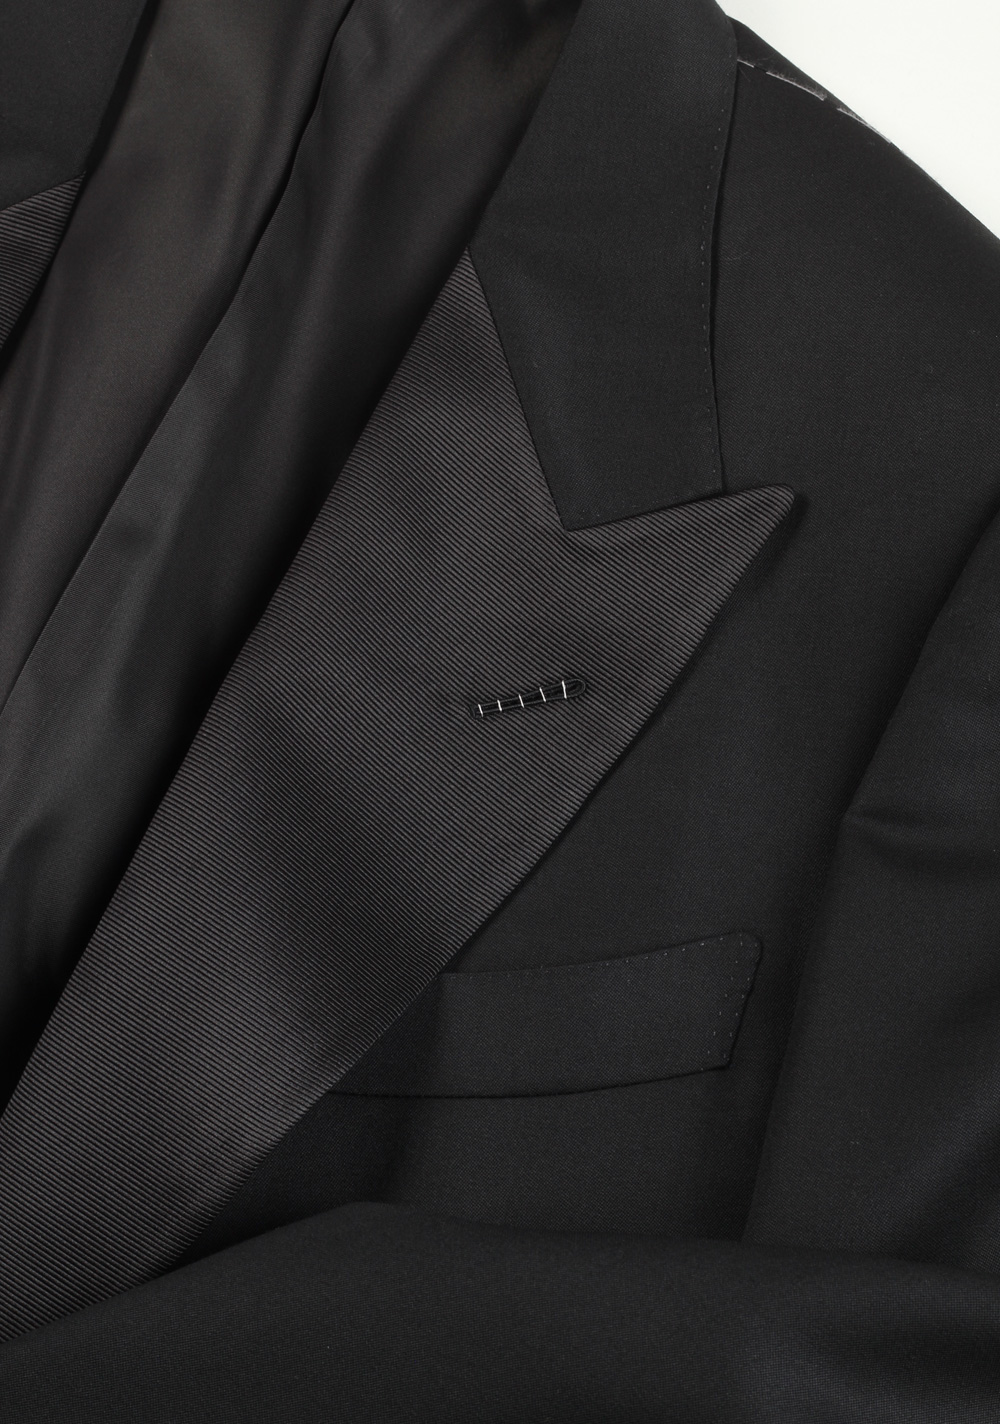 TOM FORD Suit Tuxedo Size 48C / 38S U.S. Black | Costume Limité